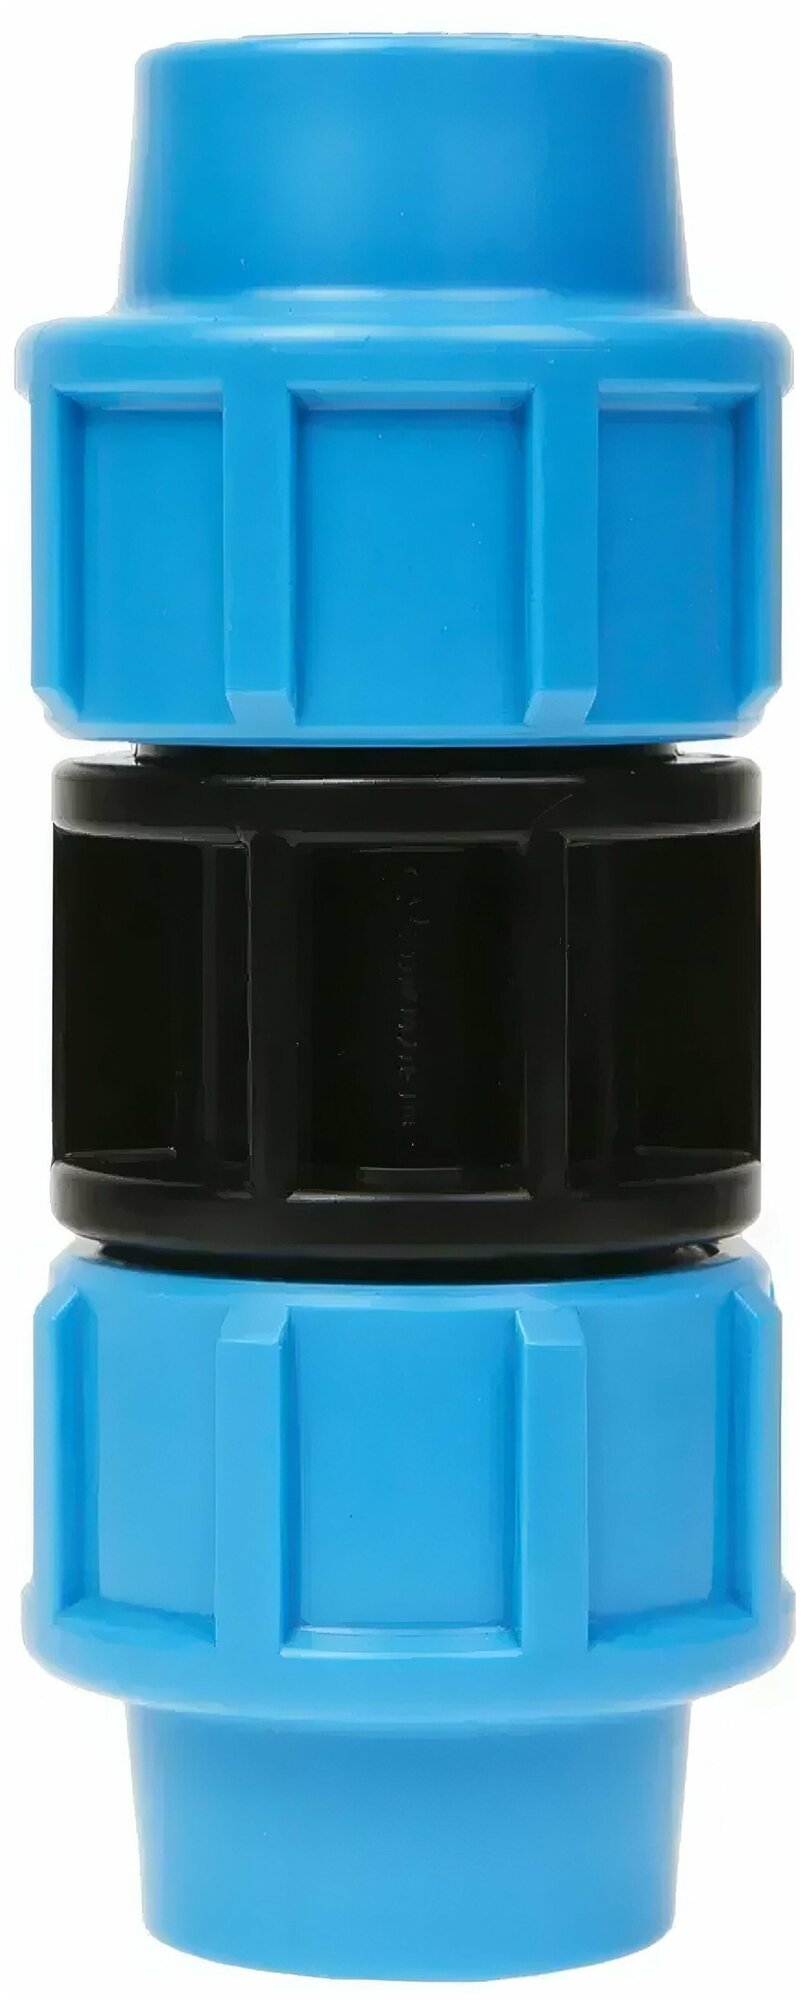 Обжимная муфта из ПНД соединительная 20 на 20 цвет голубой для обеспечения надежного соединение двух участков полиэтиленовых труб равного диаметра